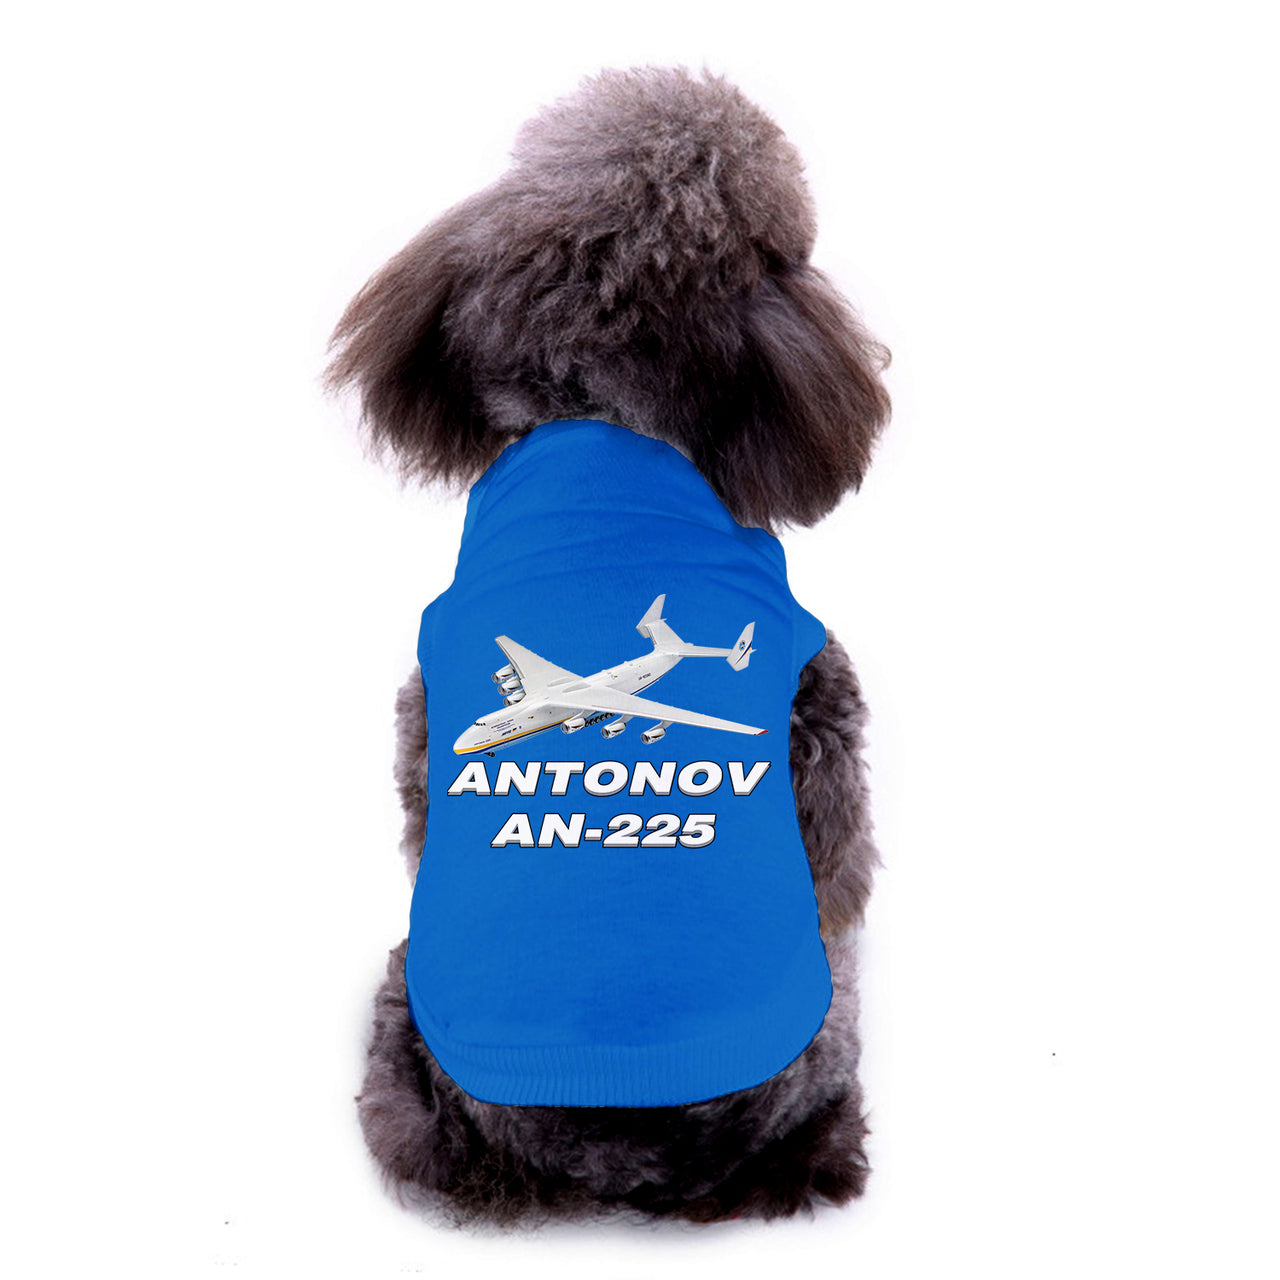 Antonov AN-225 (12) Designed Dog Pet Vests